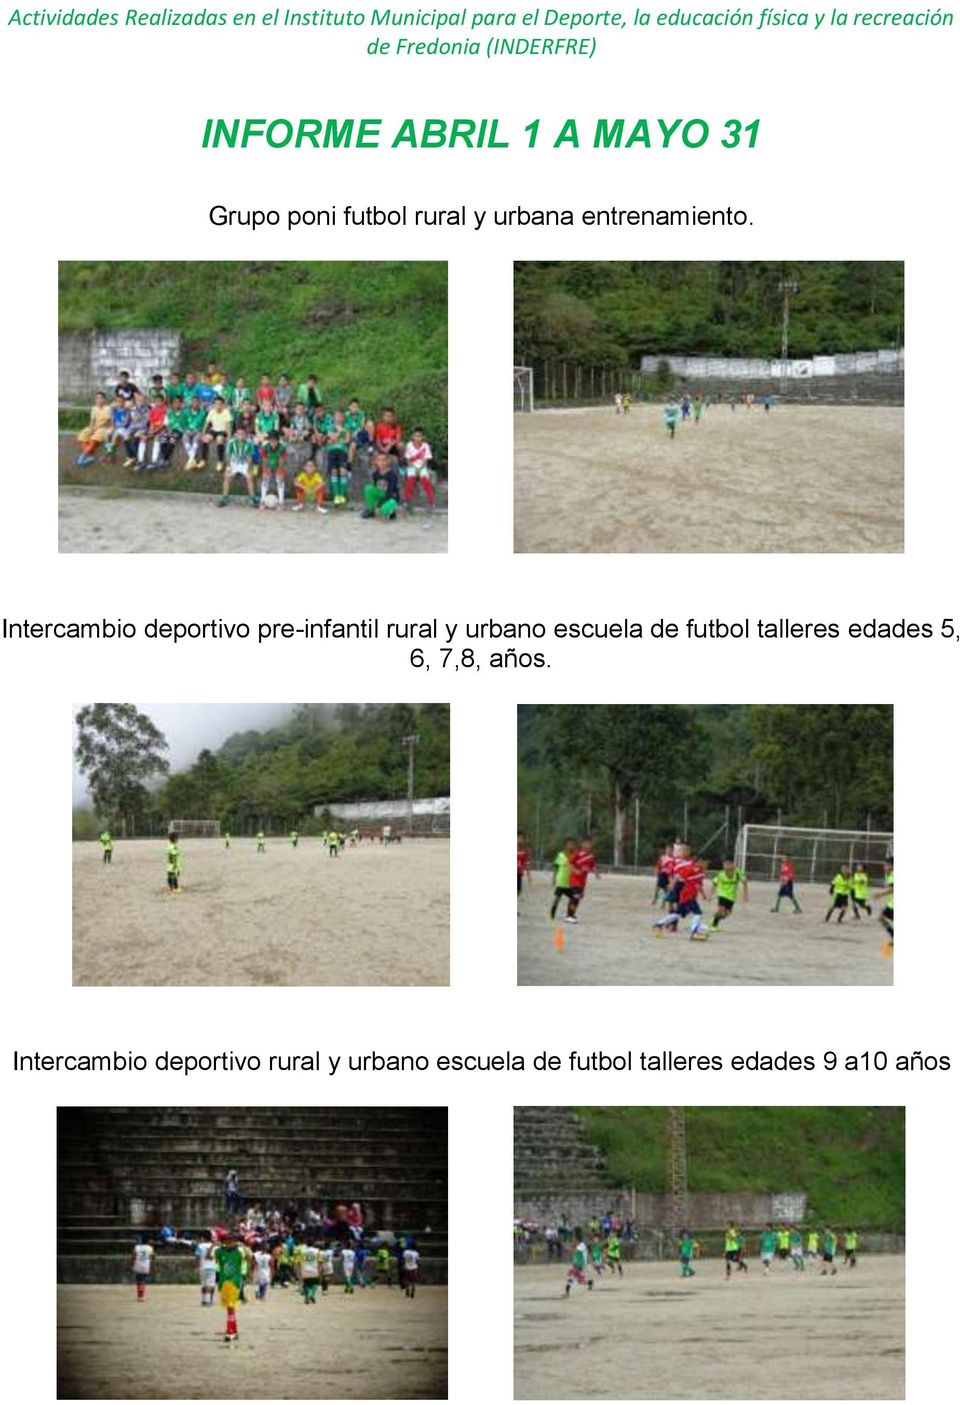 Intercambio deportivo pre-infantil rural y urbano escuela de